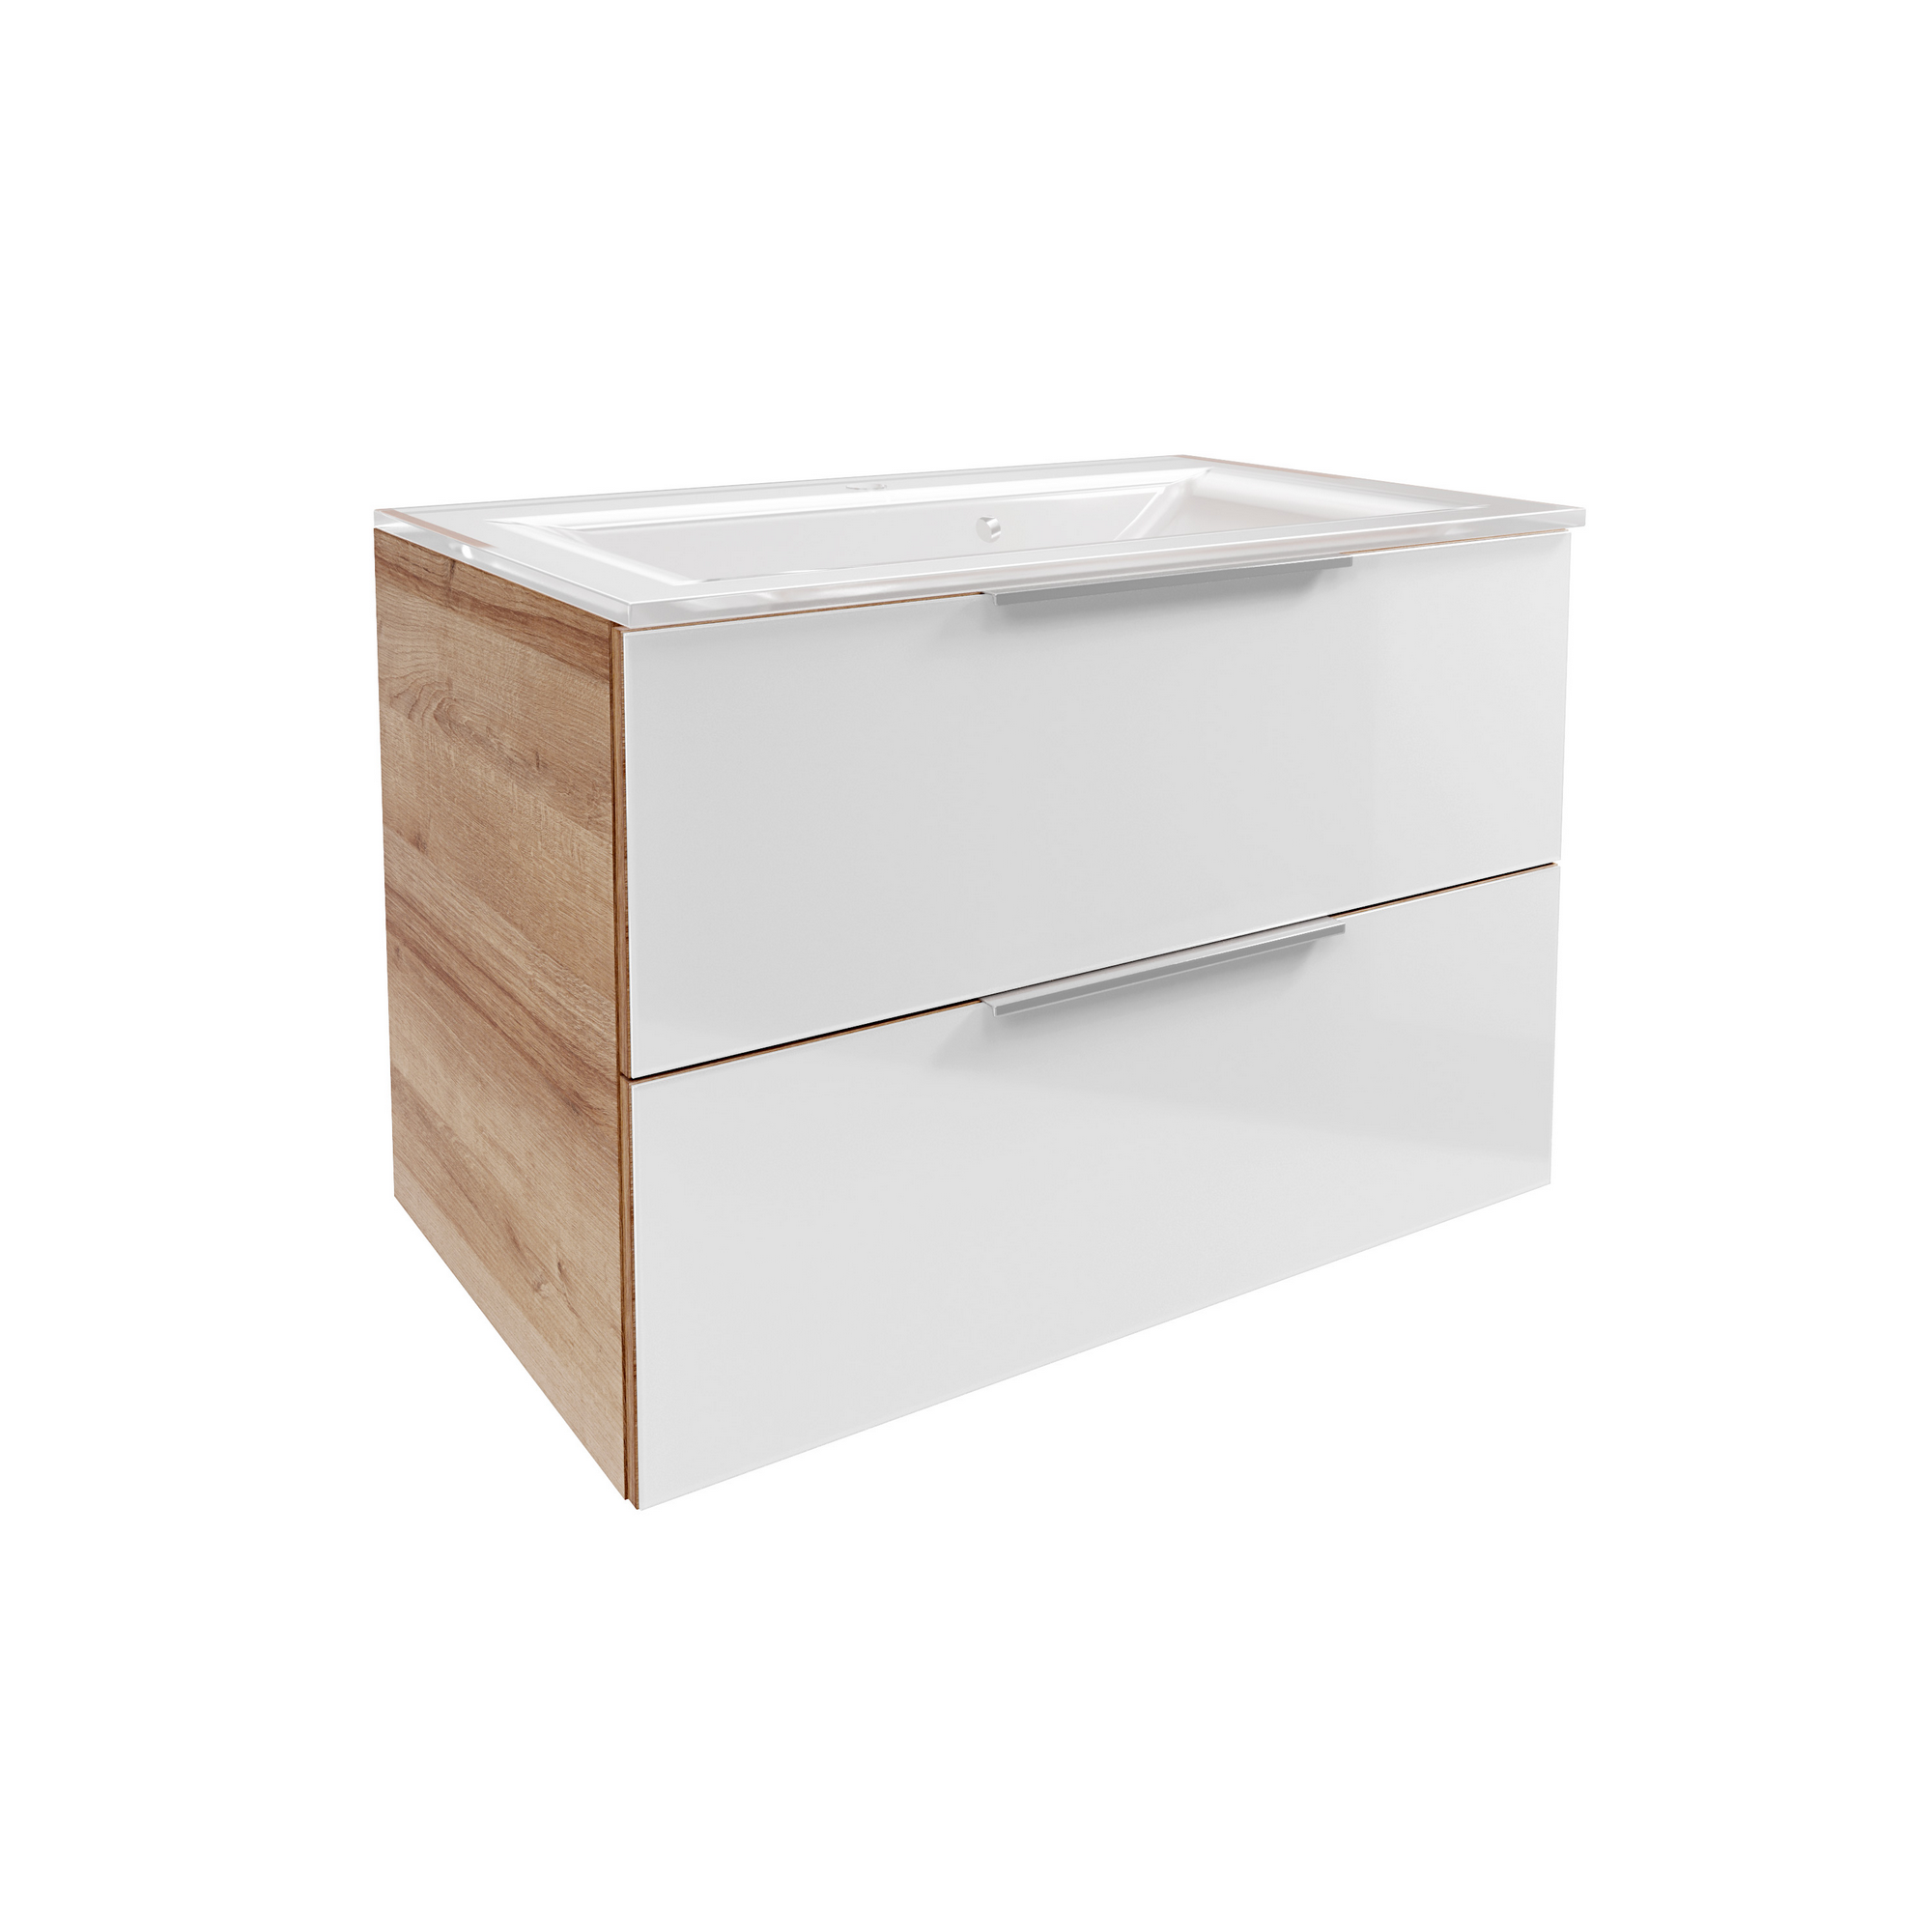 Waschbecken mit Unterschrank 'B.Brillant' Asteiche/weiß 80 x 56 x 50 cm + product picture